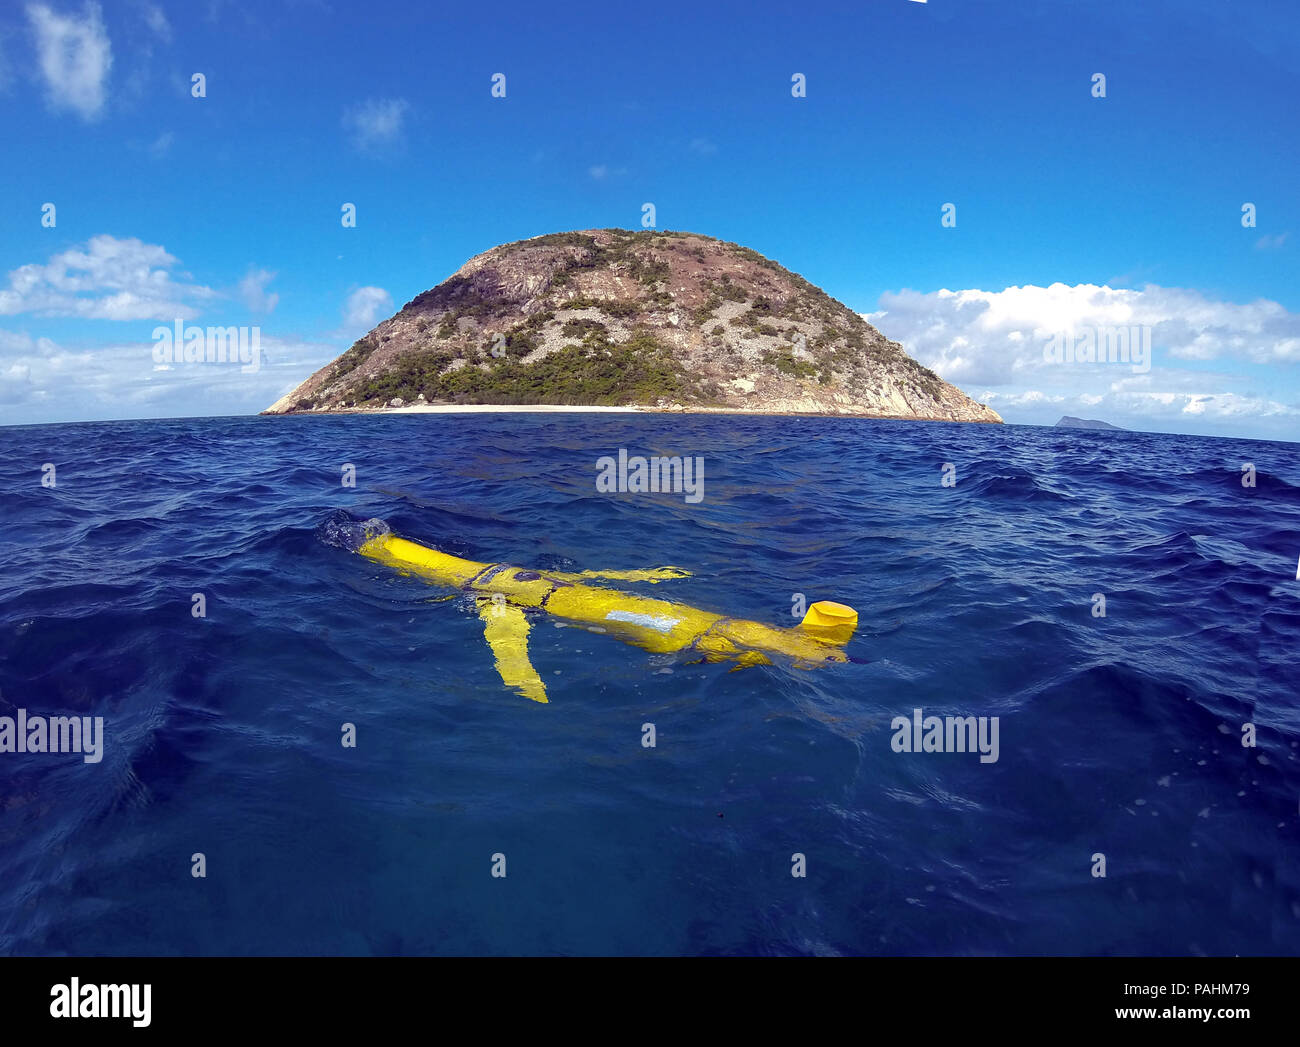 Slocum ocean glider (instrument océanographique sous-marins autonomes) flottant près de l'Île Direction nord, Grande Barrière de Corail, Queensland, Australie. Banque D'Images